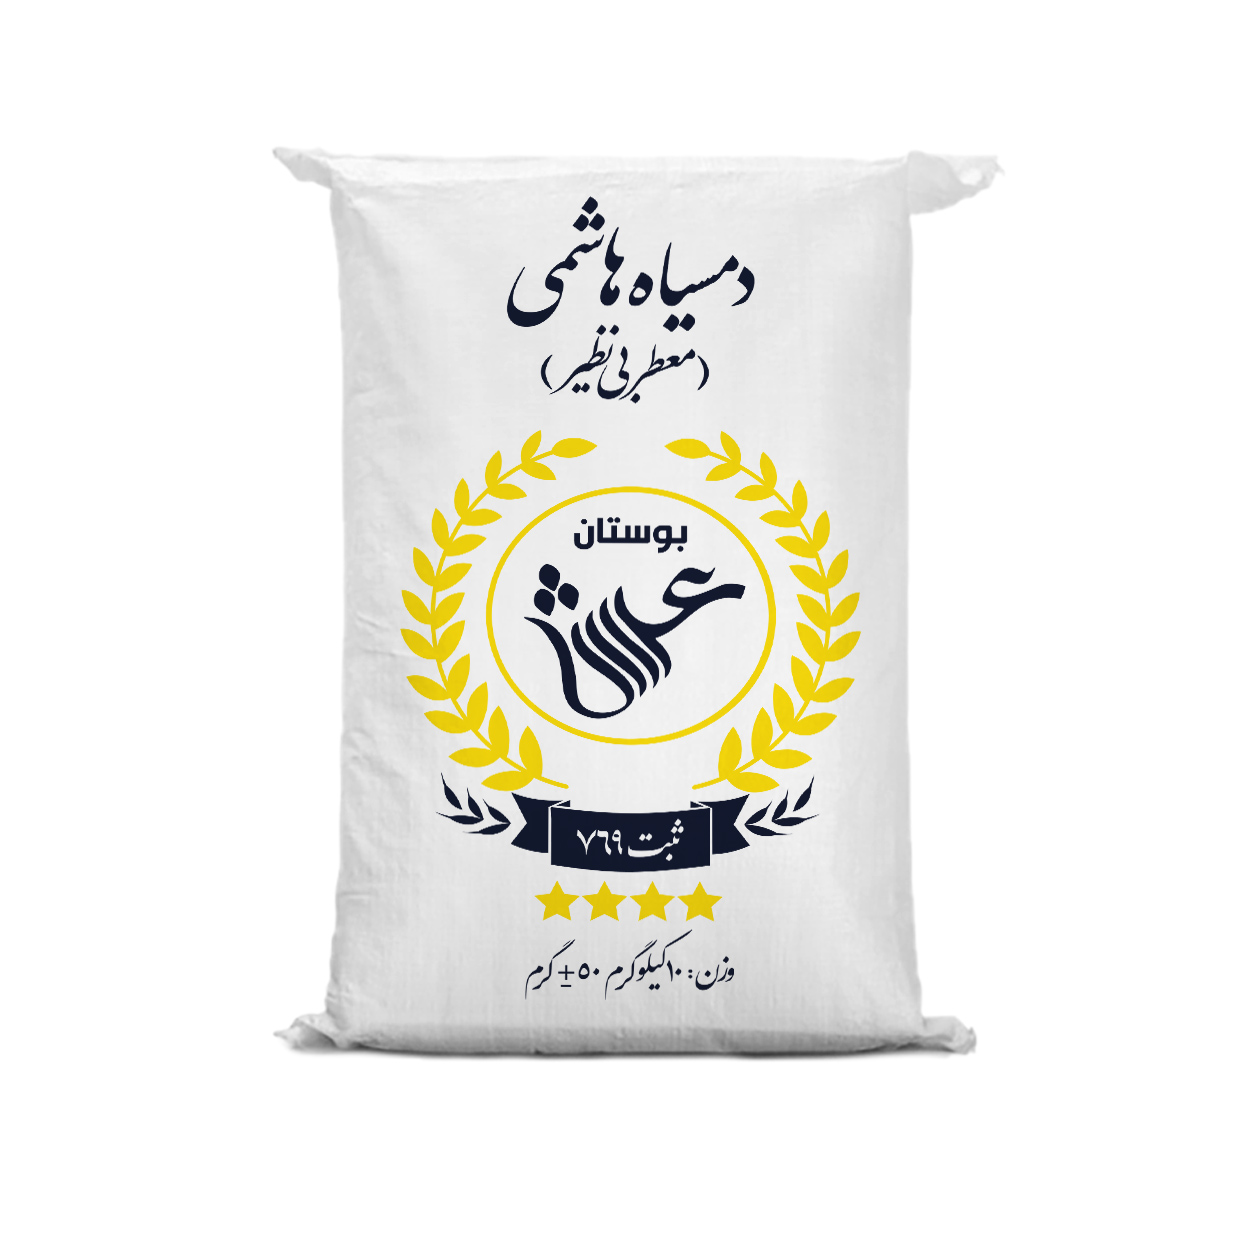 نکته خرید - قیمت روز برنج ایرانی دمسیاه هاشمی بوستان عرش - 10 کیلوگرم خرید